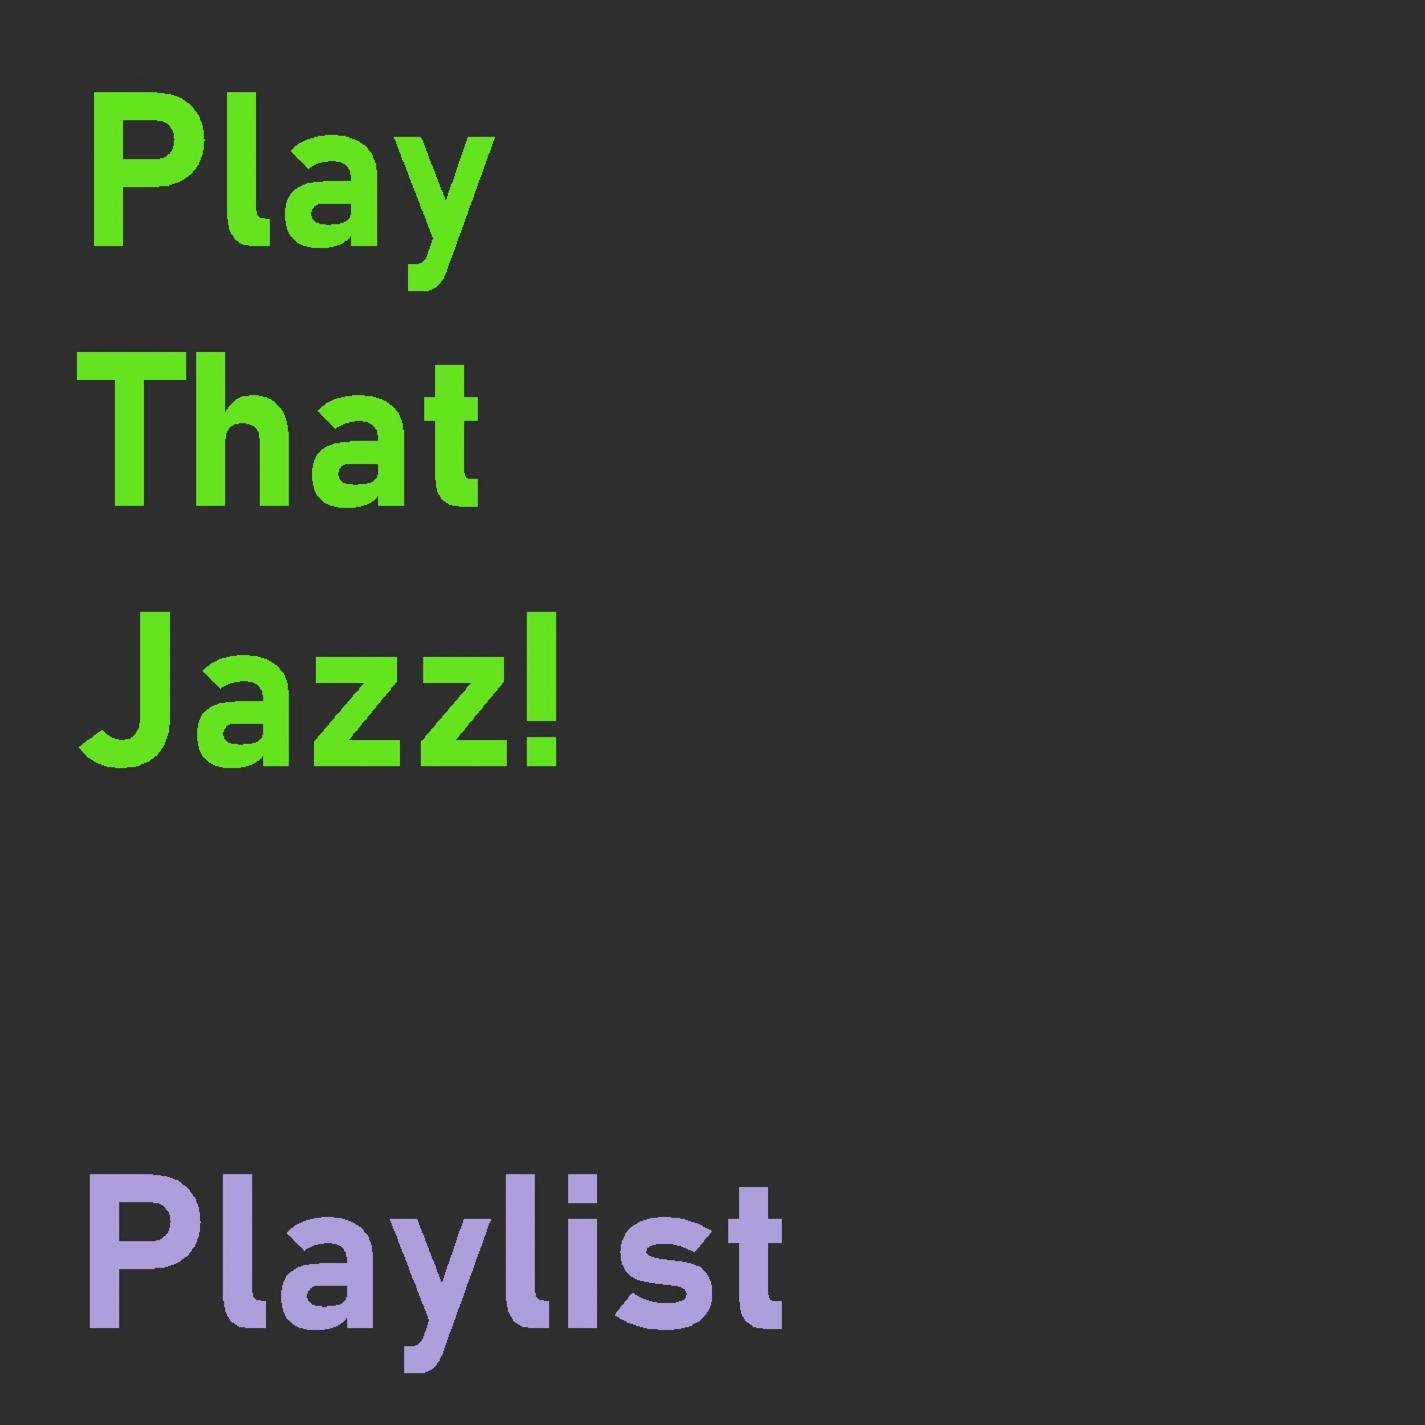 Jazzy Jazzenstein